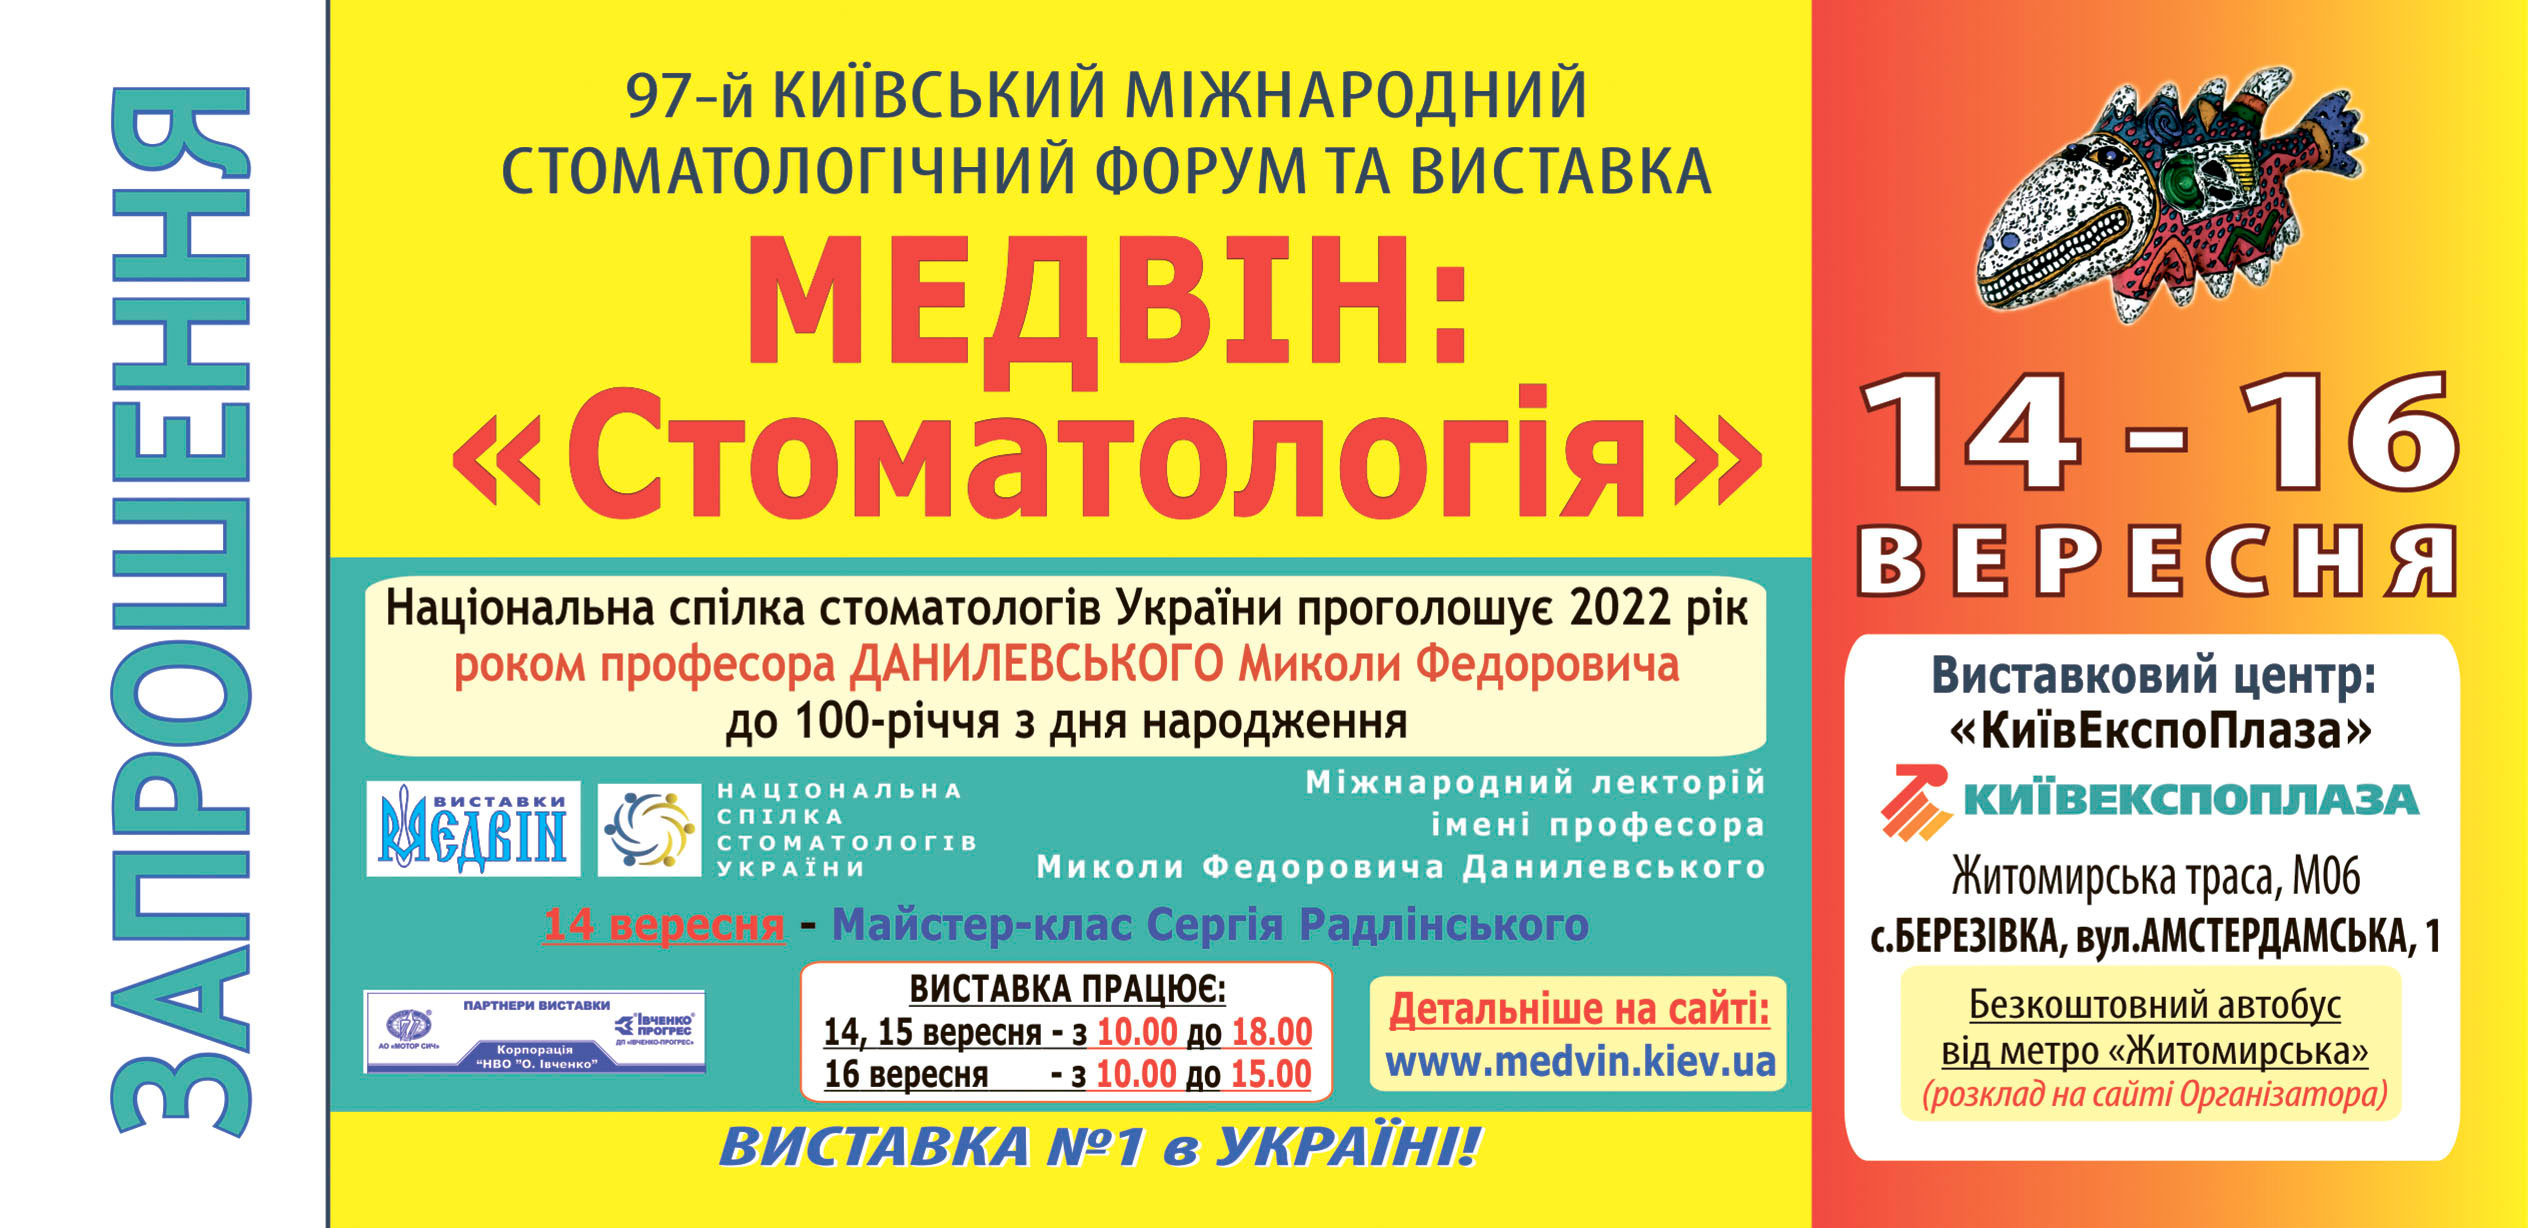 Квиток на виставку "МЕДВІН: Стоматологія" - КИЇВ, 14-16 вересня 2022